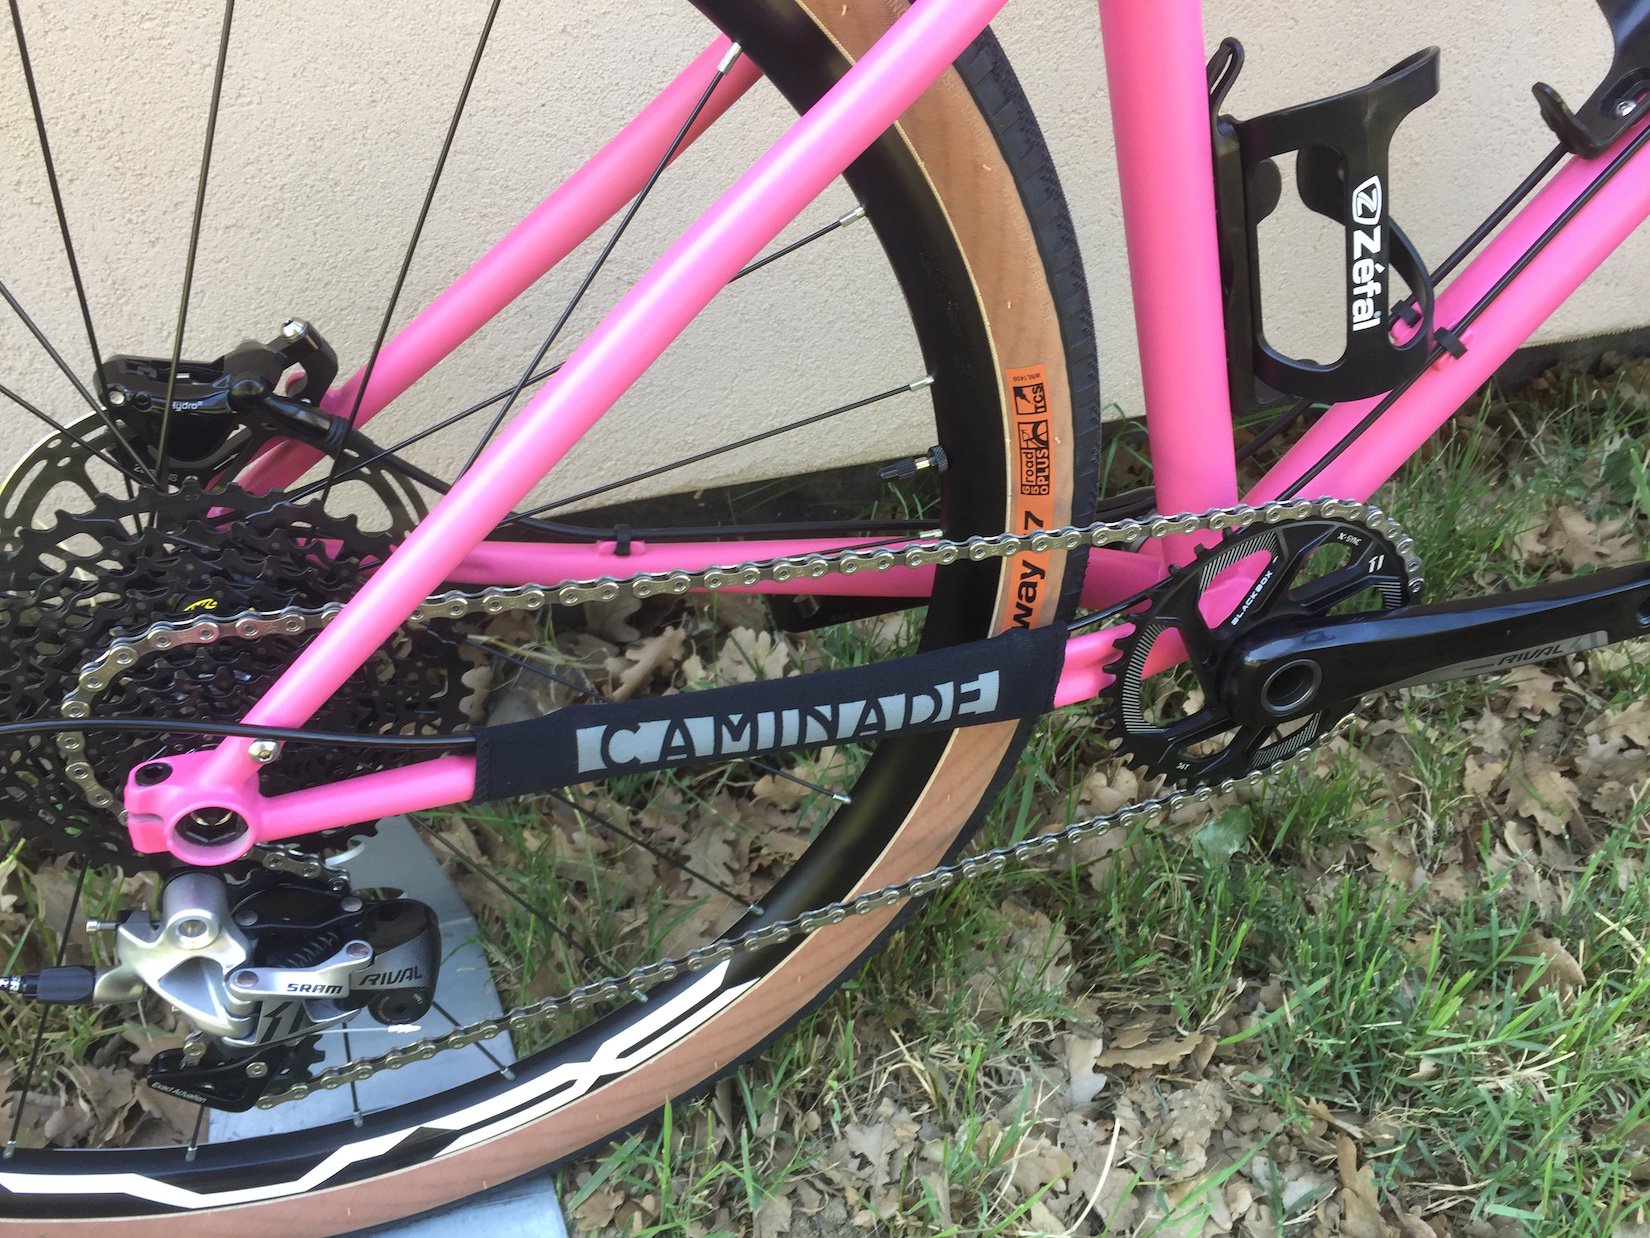 acier sur mesure - Le Pink gravel de Caroline - Le Pink gravel de Caroline  - Des vélos conçus et fabriqués en France - Caminade